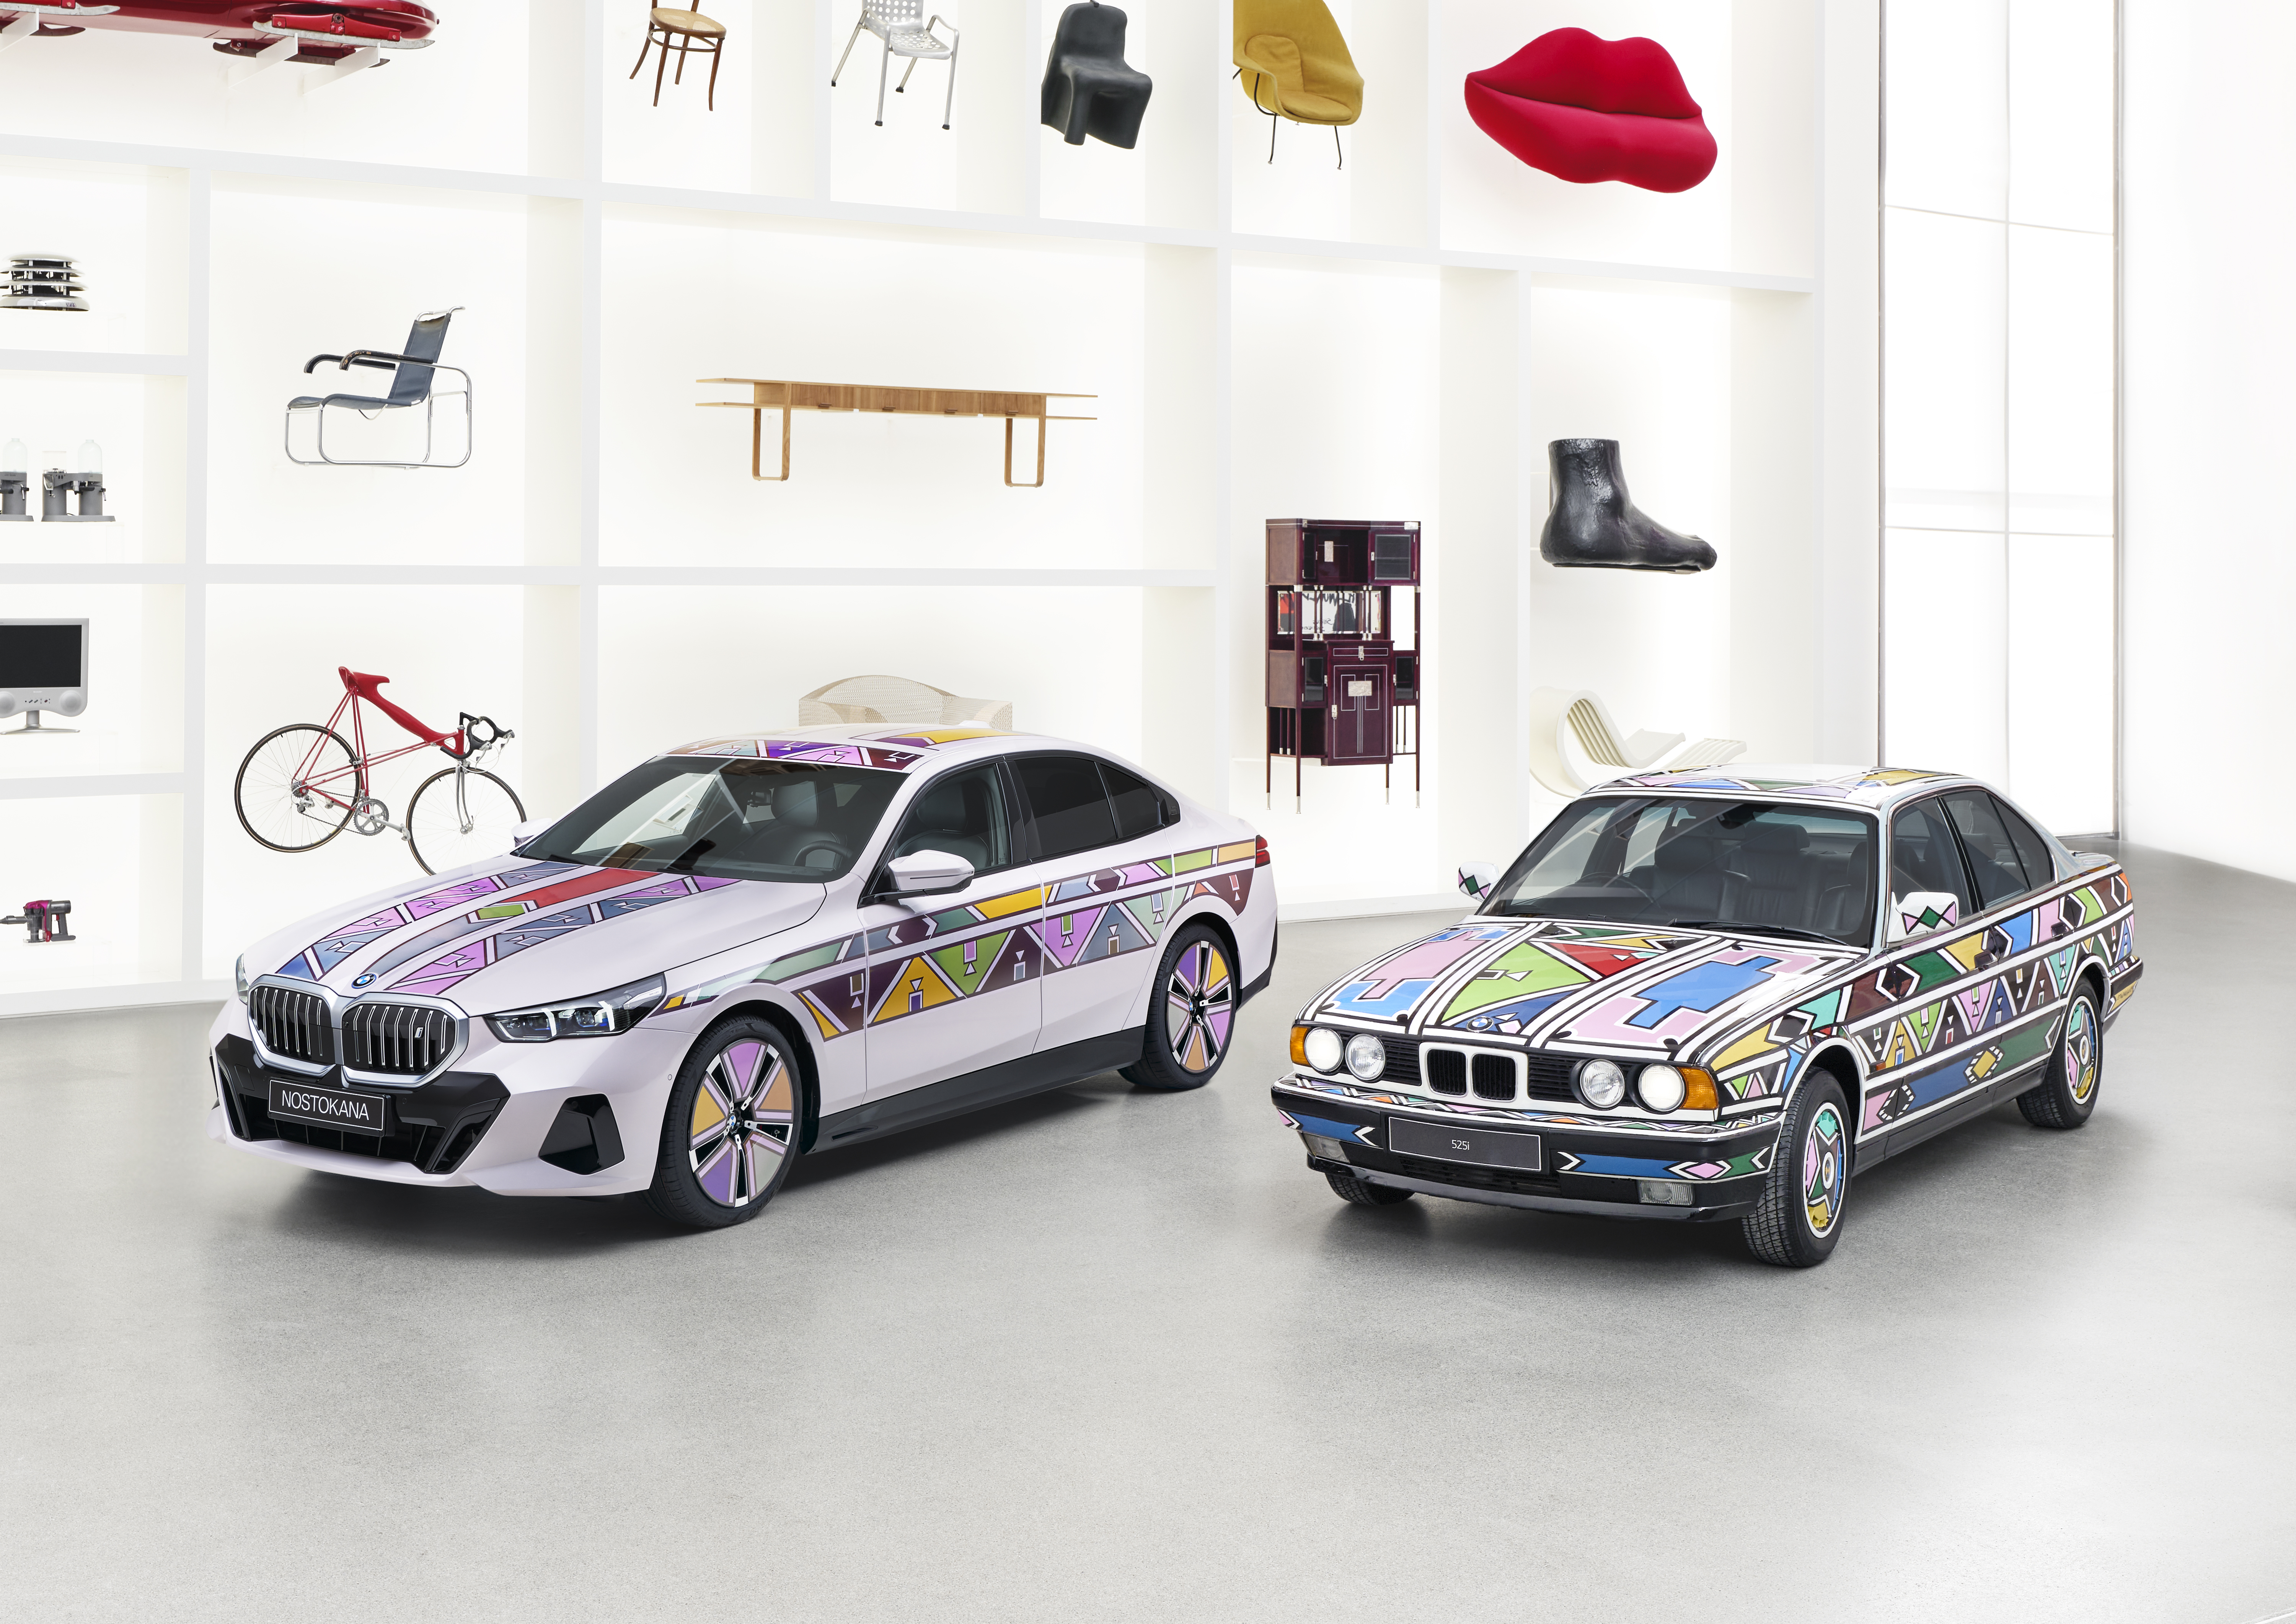 Dieses Modell stellt eine Verschmelzung von Kunst und Innovation dar und erinnert an das BMW Art Car, das 1991 von der südafrikanischen Künstlerin Esther Mahlangu entworfen wurde.